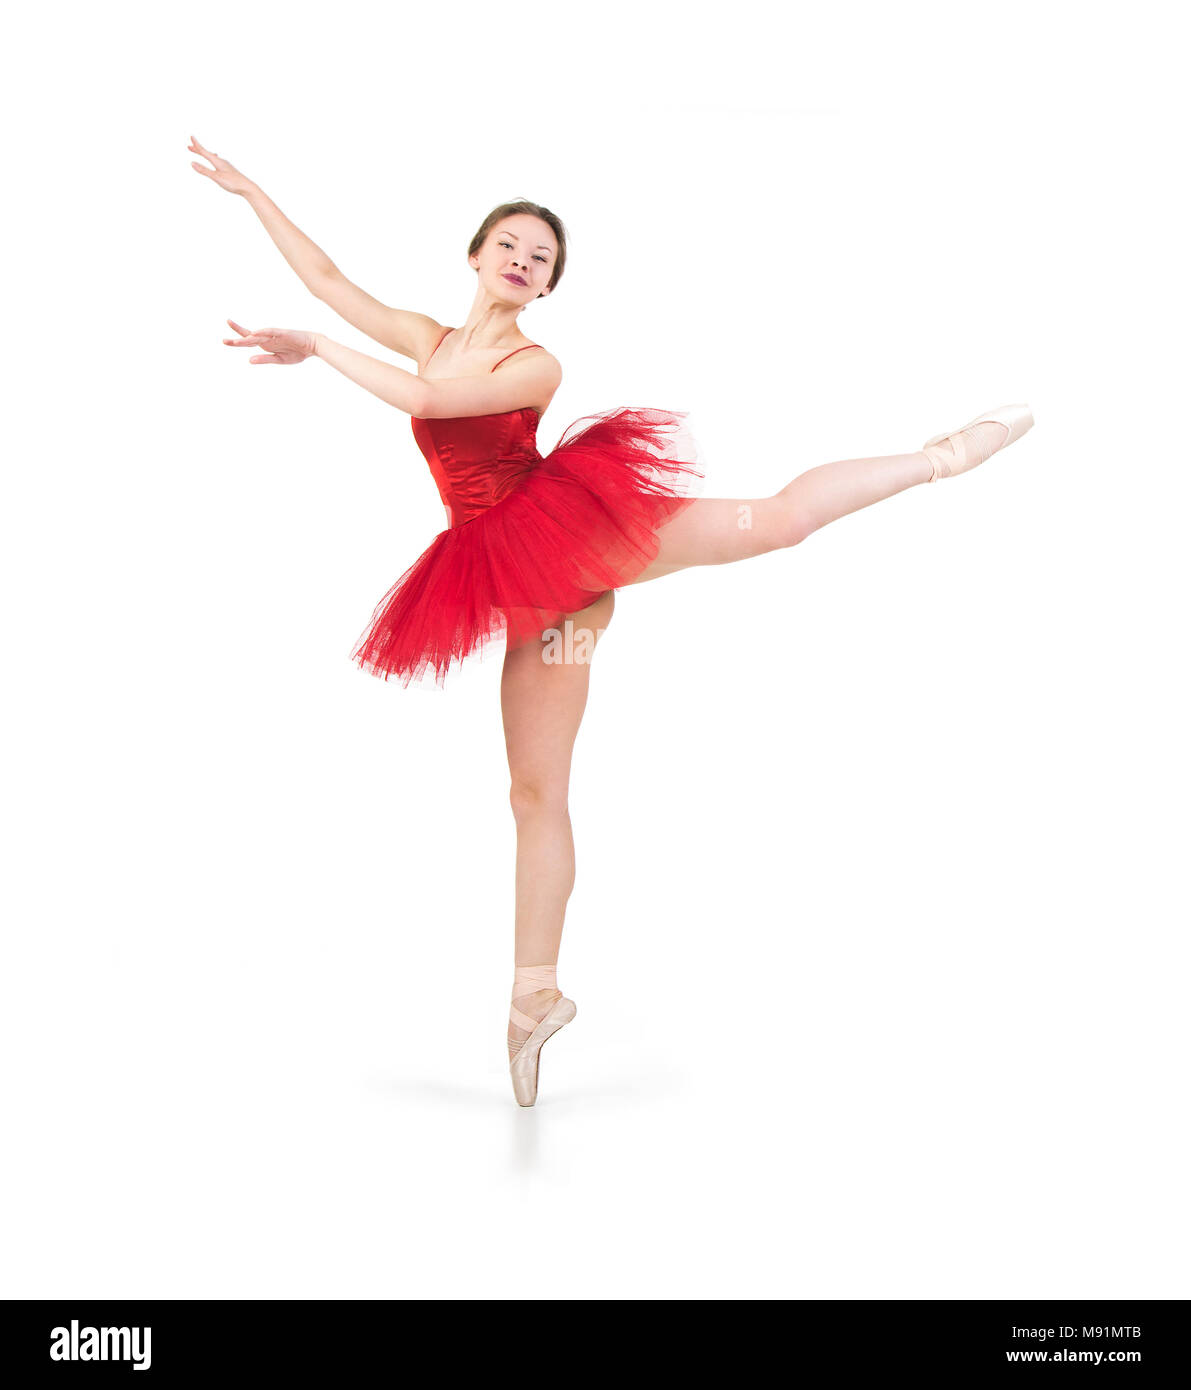 Tutú de Ballet profesional para mujer, tutú rojo de alta calidad